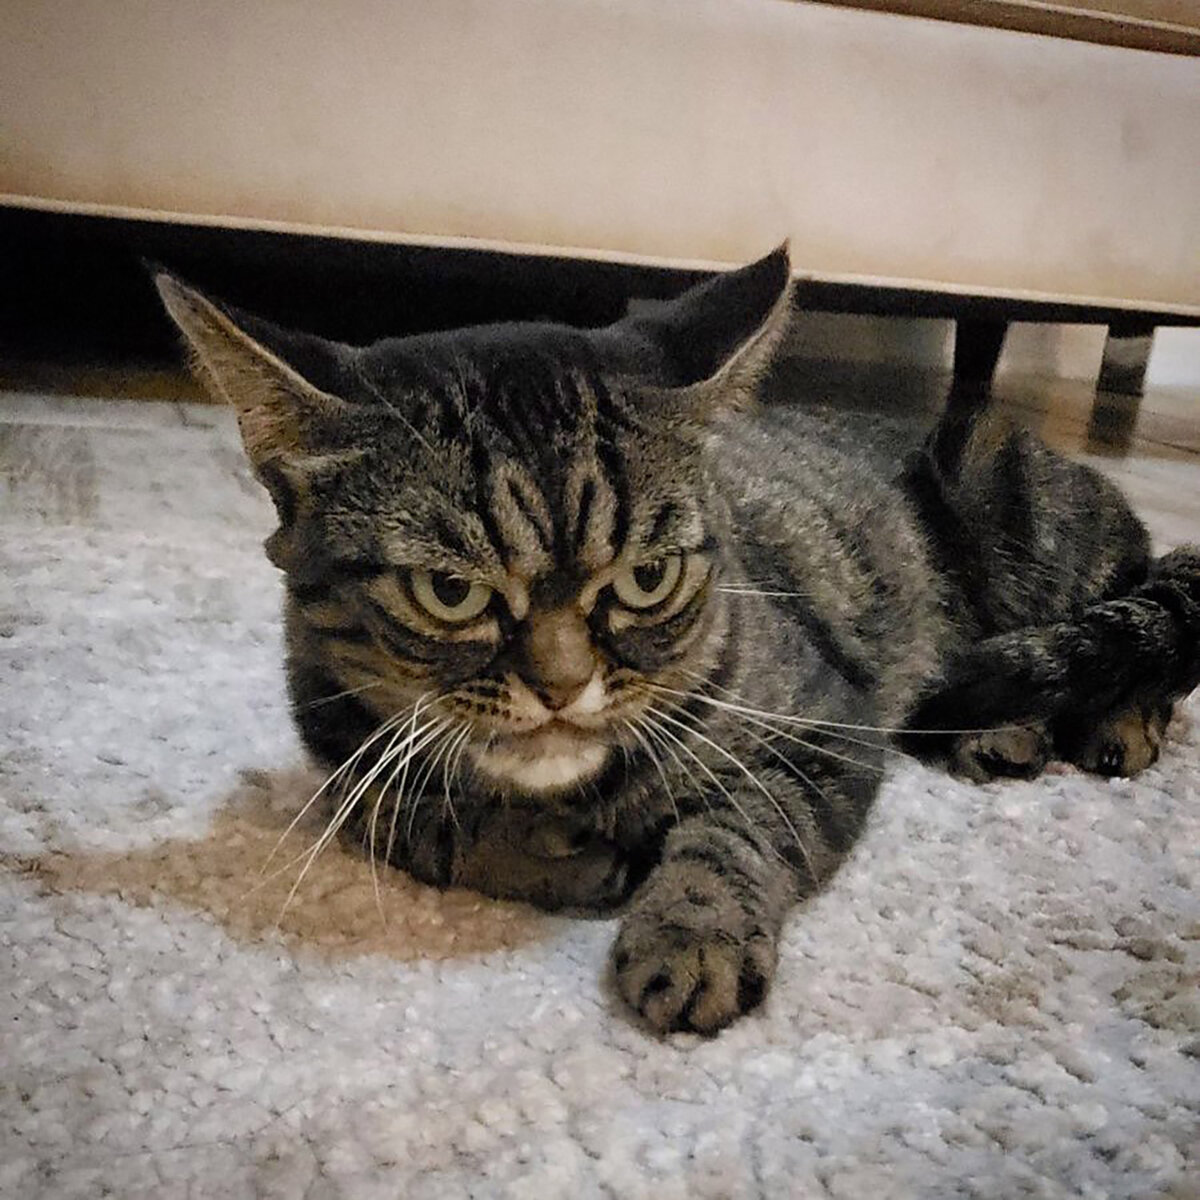 Прошёл год после смерти всемирно известного кота по кличке Grumpy cat и вот в Instagram снова появился Сердитый кот. Правда, в этот раз мы имеем дело с кошкой.-2